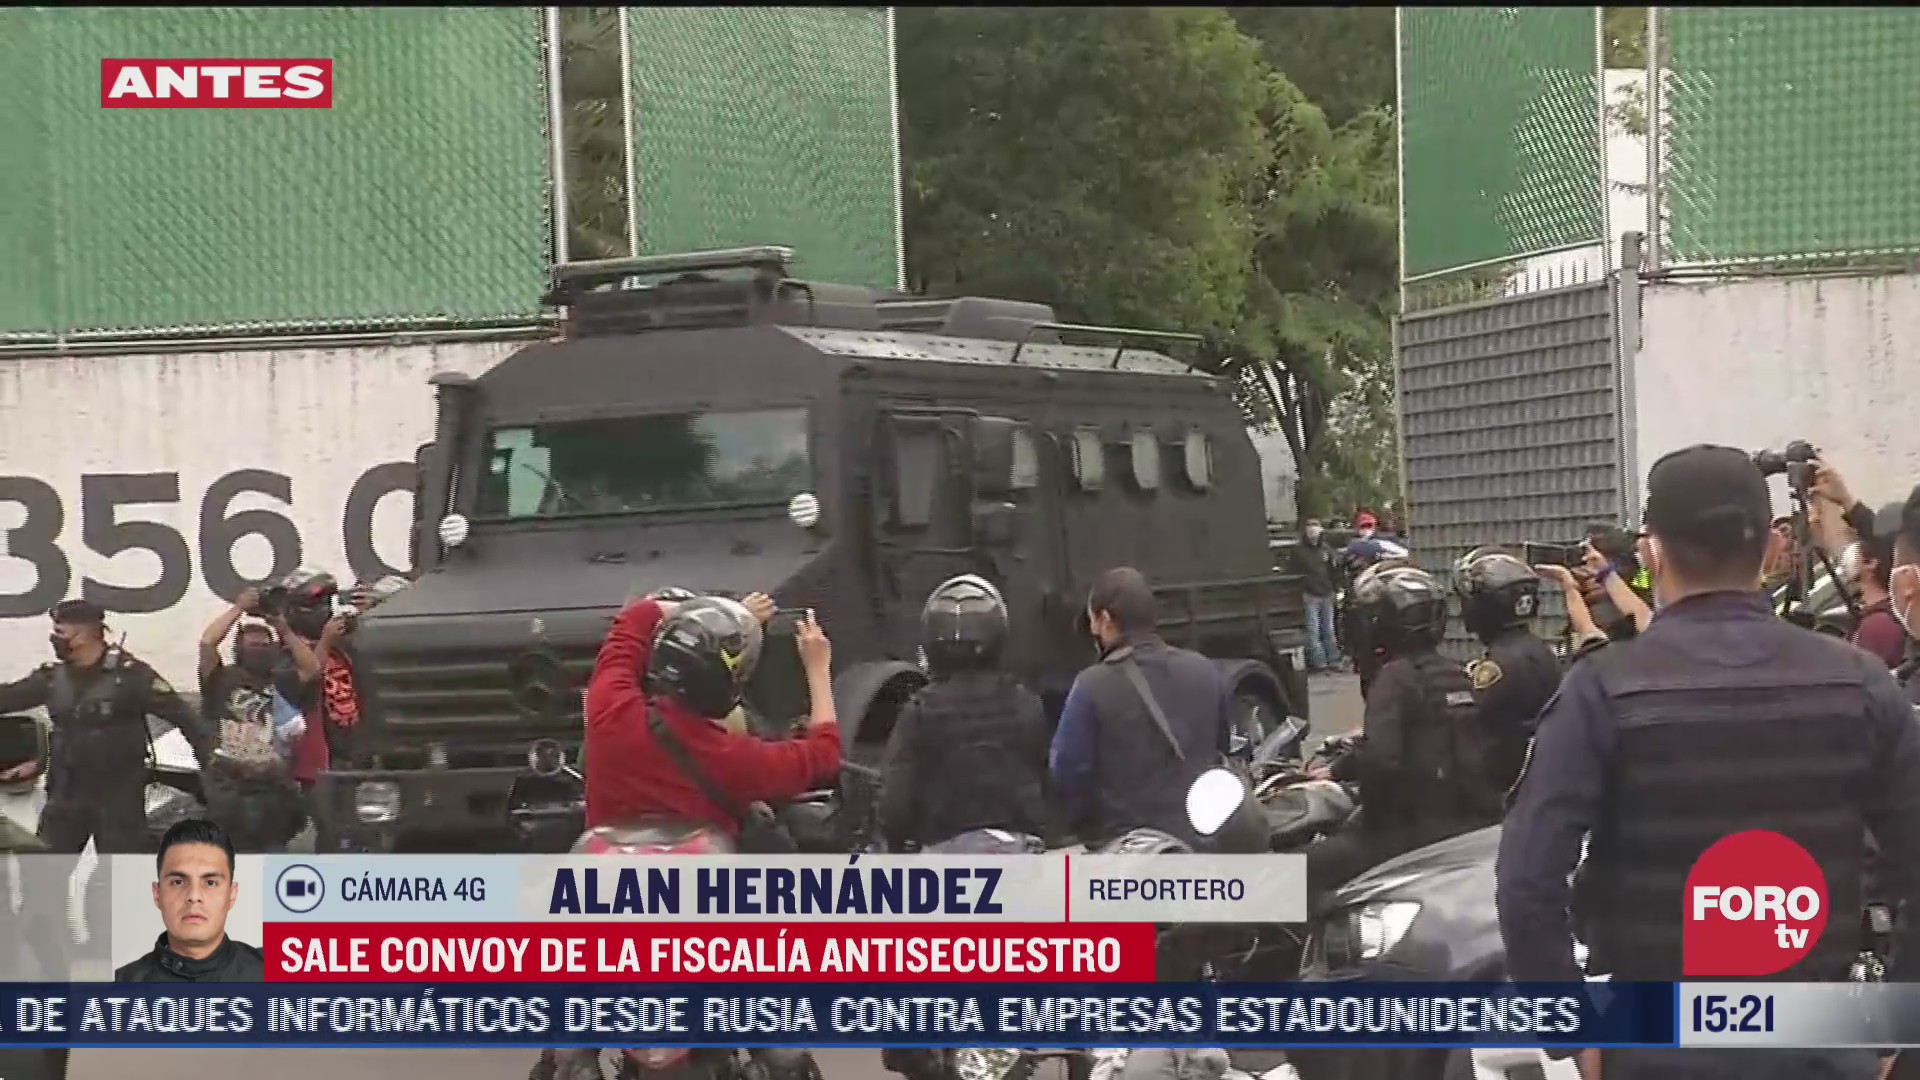 FOTO: 28 de junio 2020, sale convoy de la fiscalia antisecuestro con detenidos por atentado contra garcia harfuch